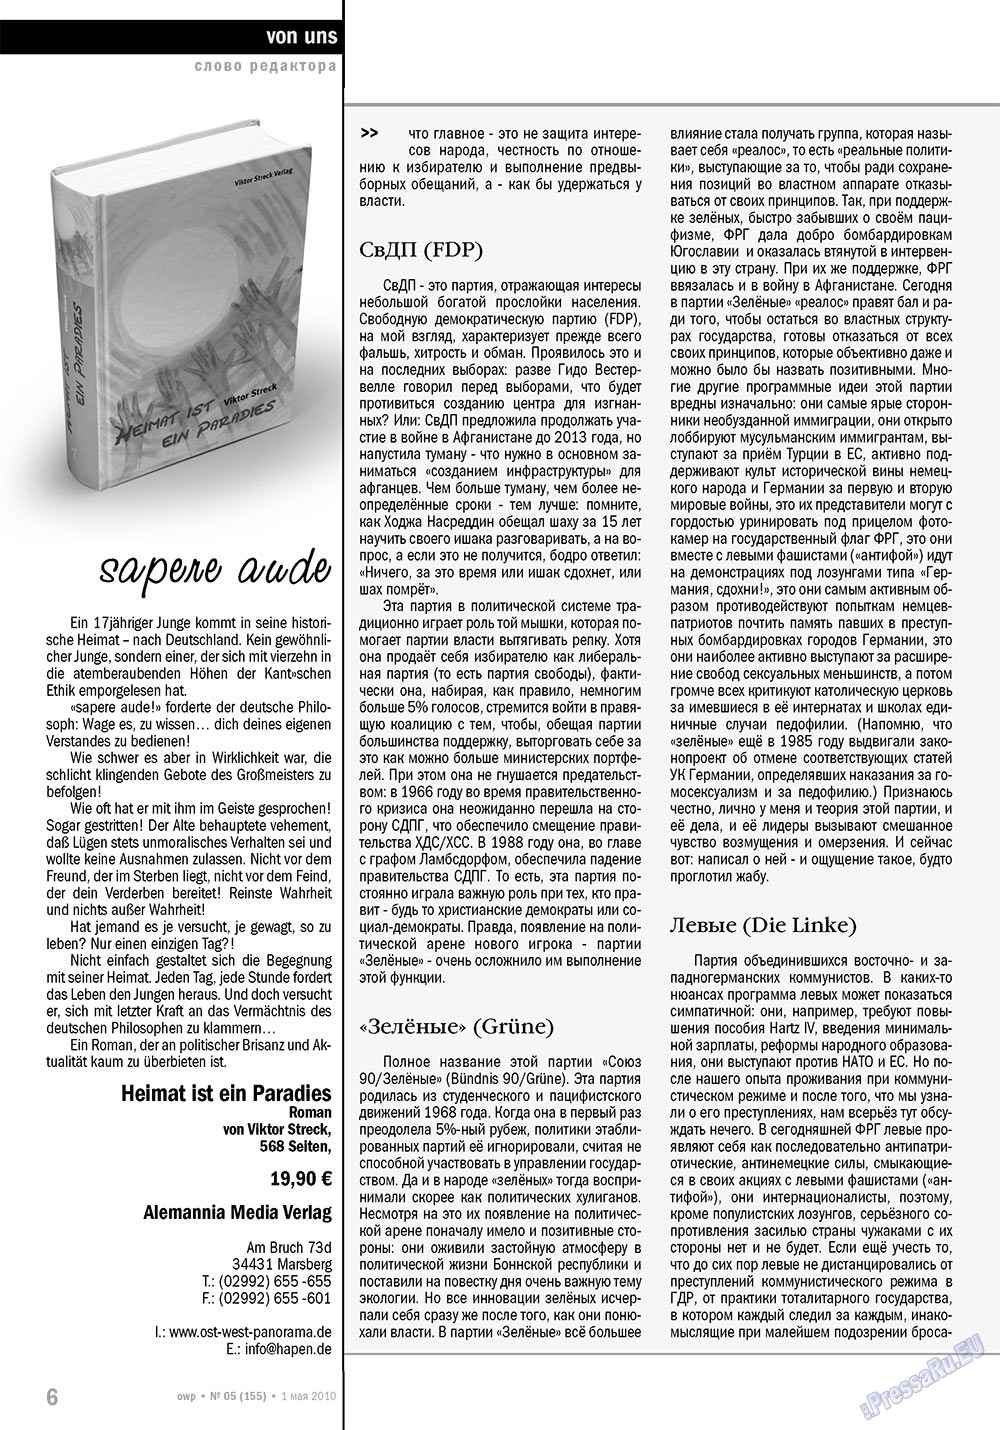 Ost-West Panorama (журнал). 2010 год, номер 5, стр. 6